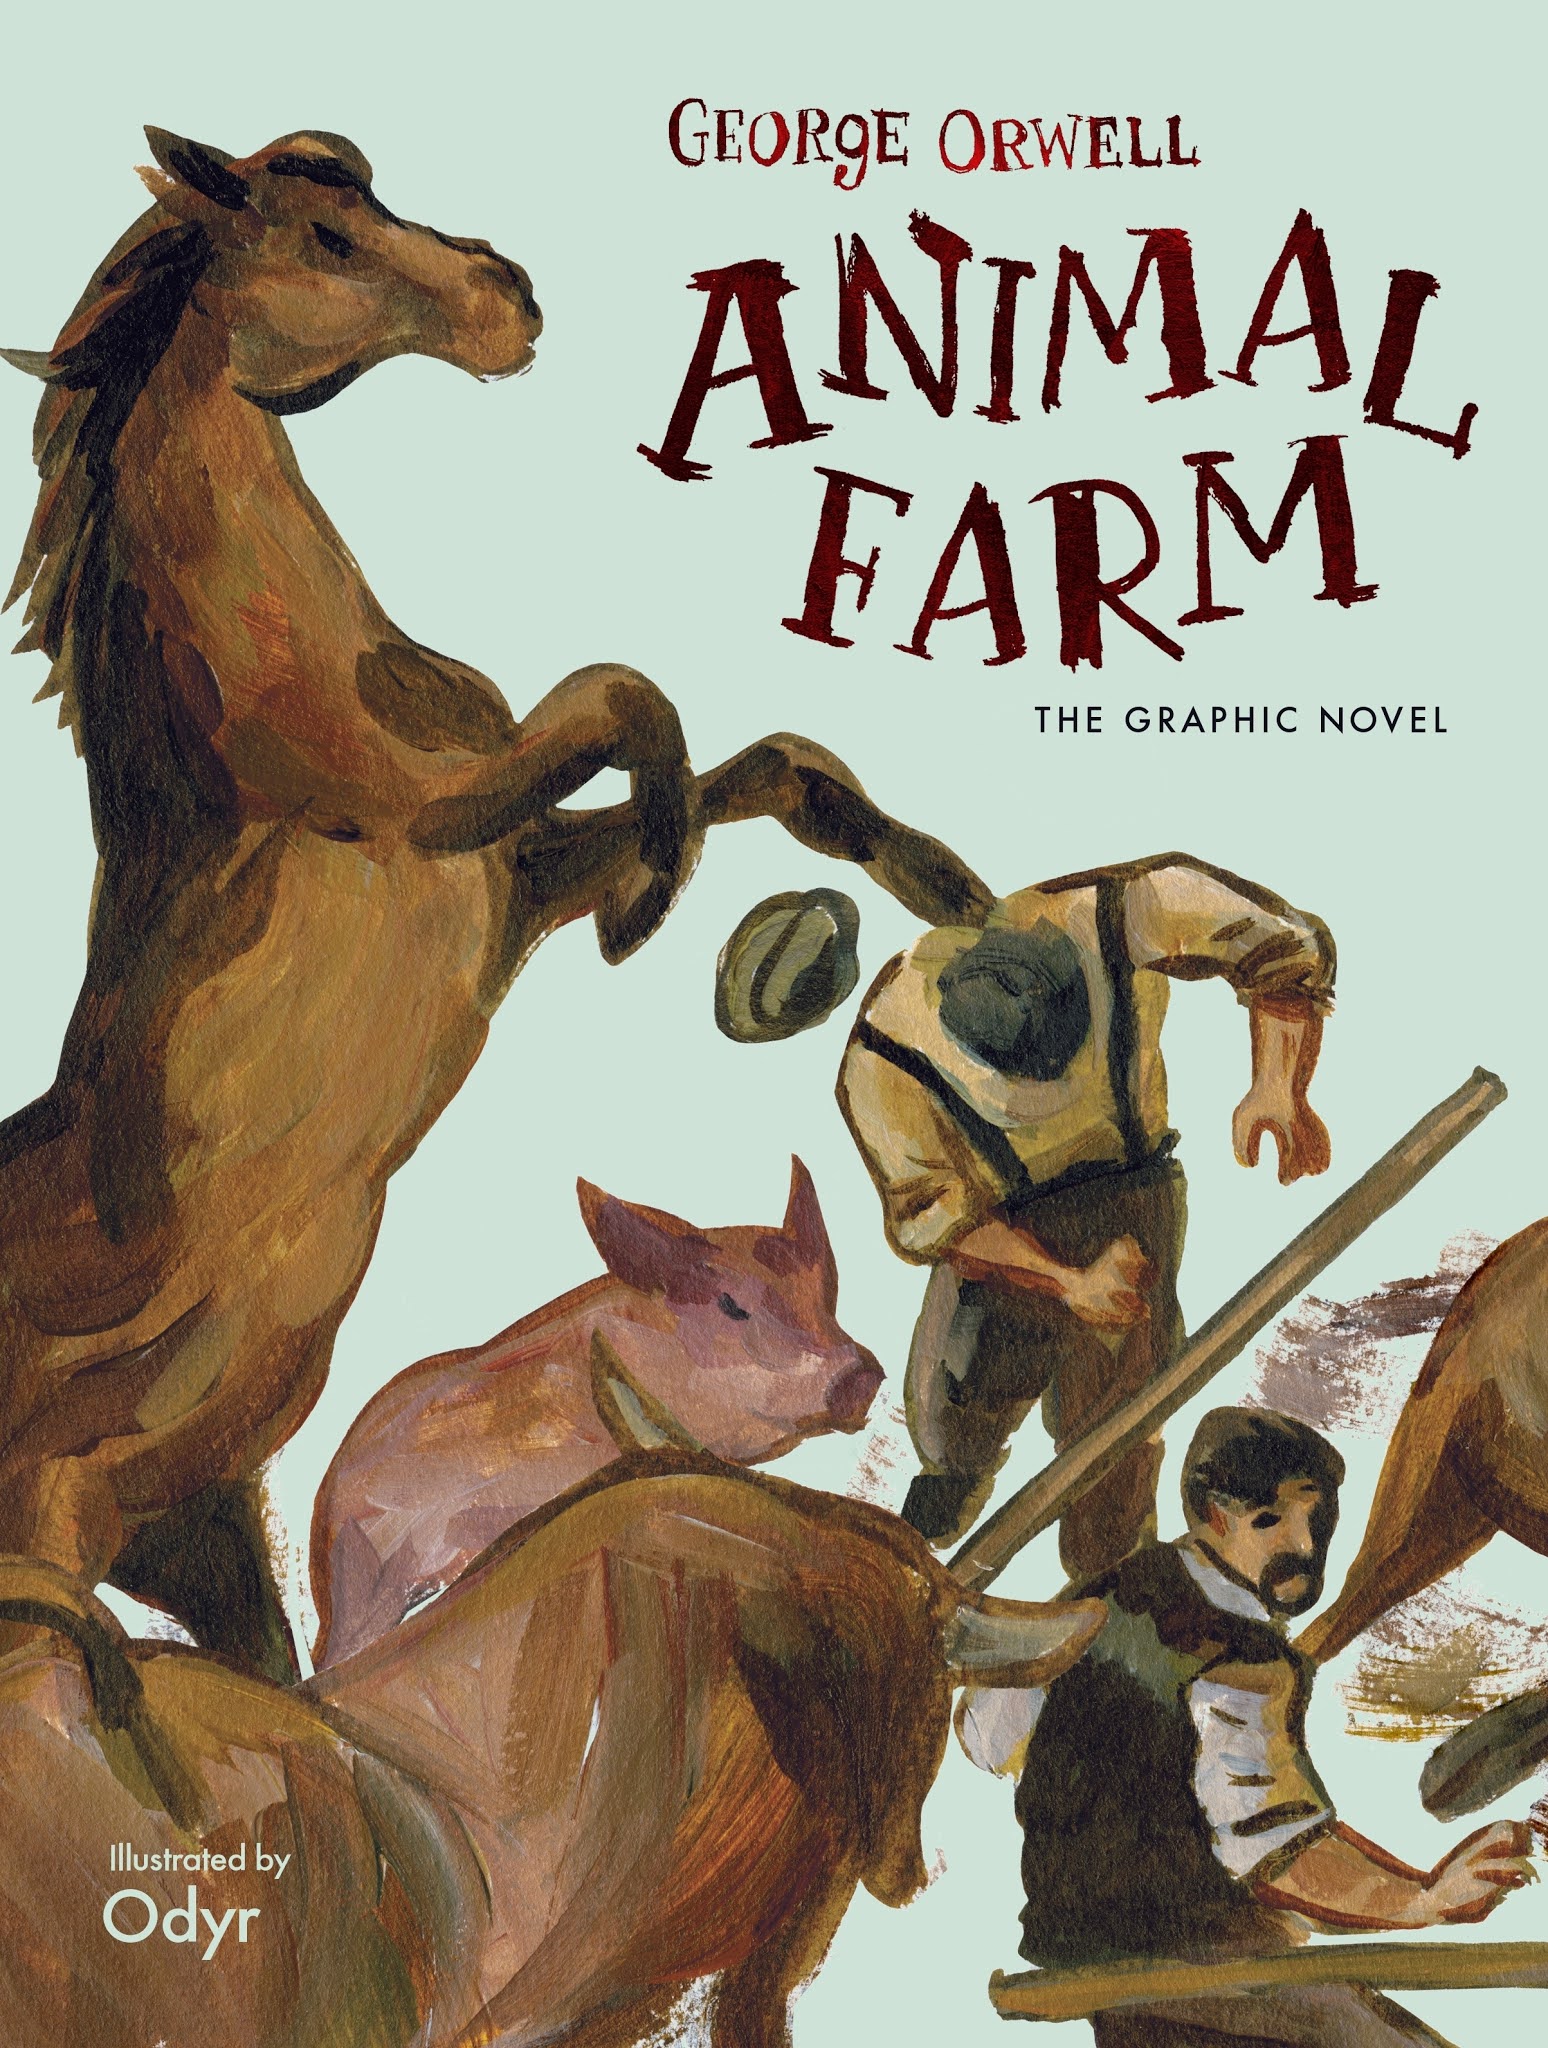 Farm Animals Summary